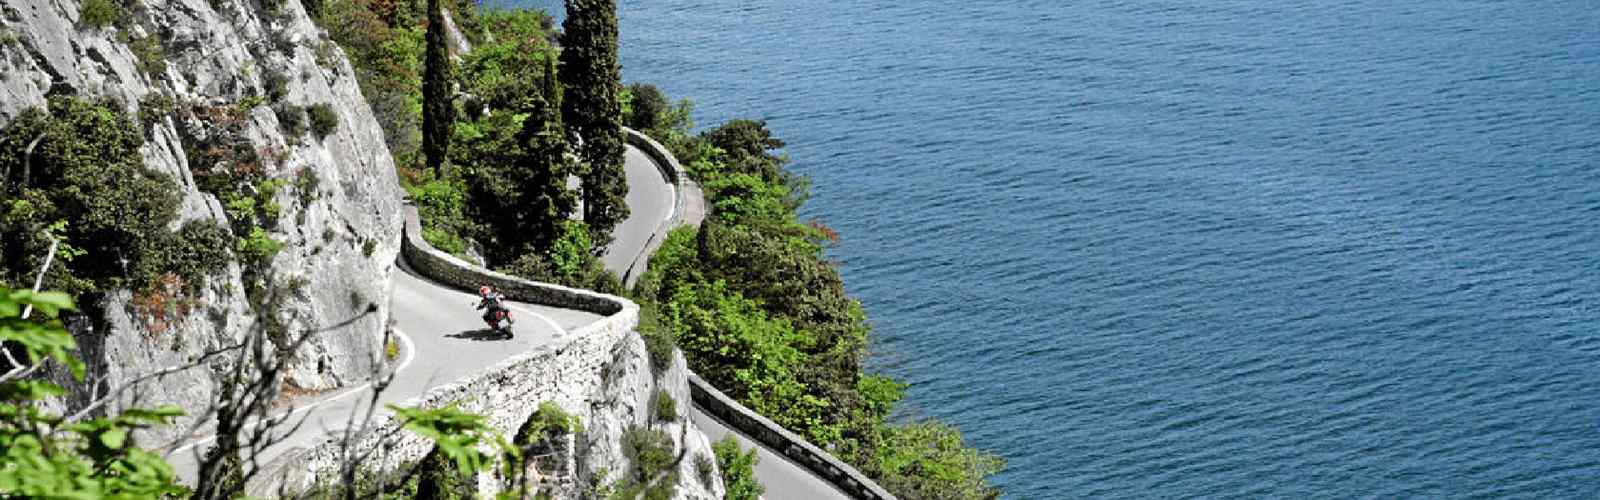 Lago di Garda in moto tra strade e panorami spettacolari